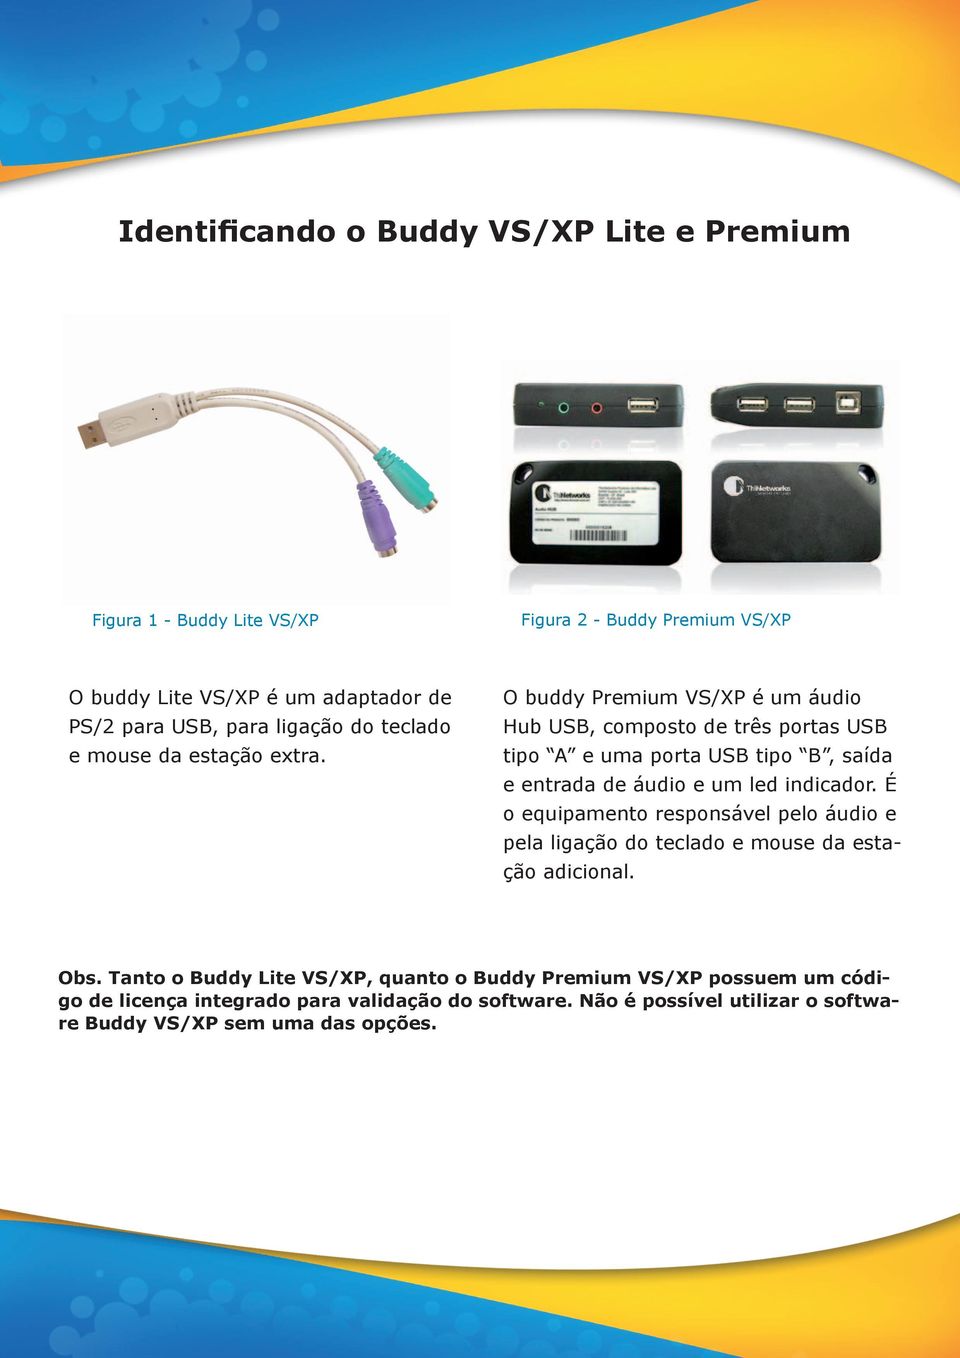 O buddy Premium VS/XP é um áudio Hub USB, composto de três portas USB tipo A e uma porta USB tipo B, saída e entrada de áudio e um led indicador.